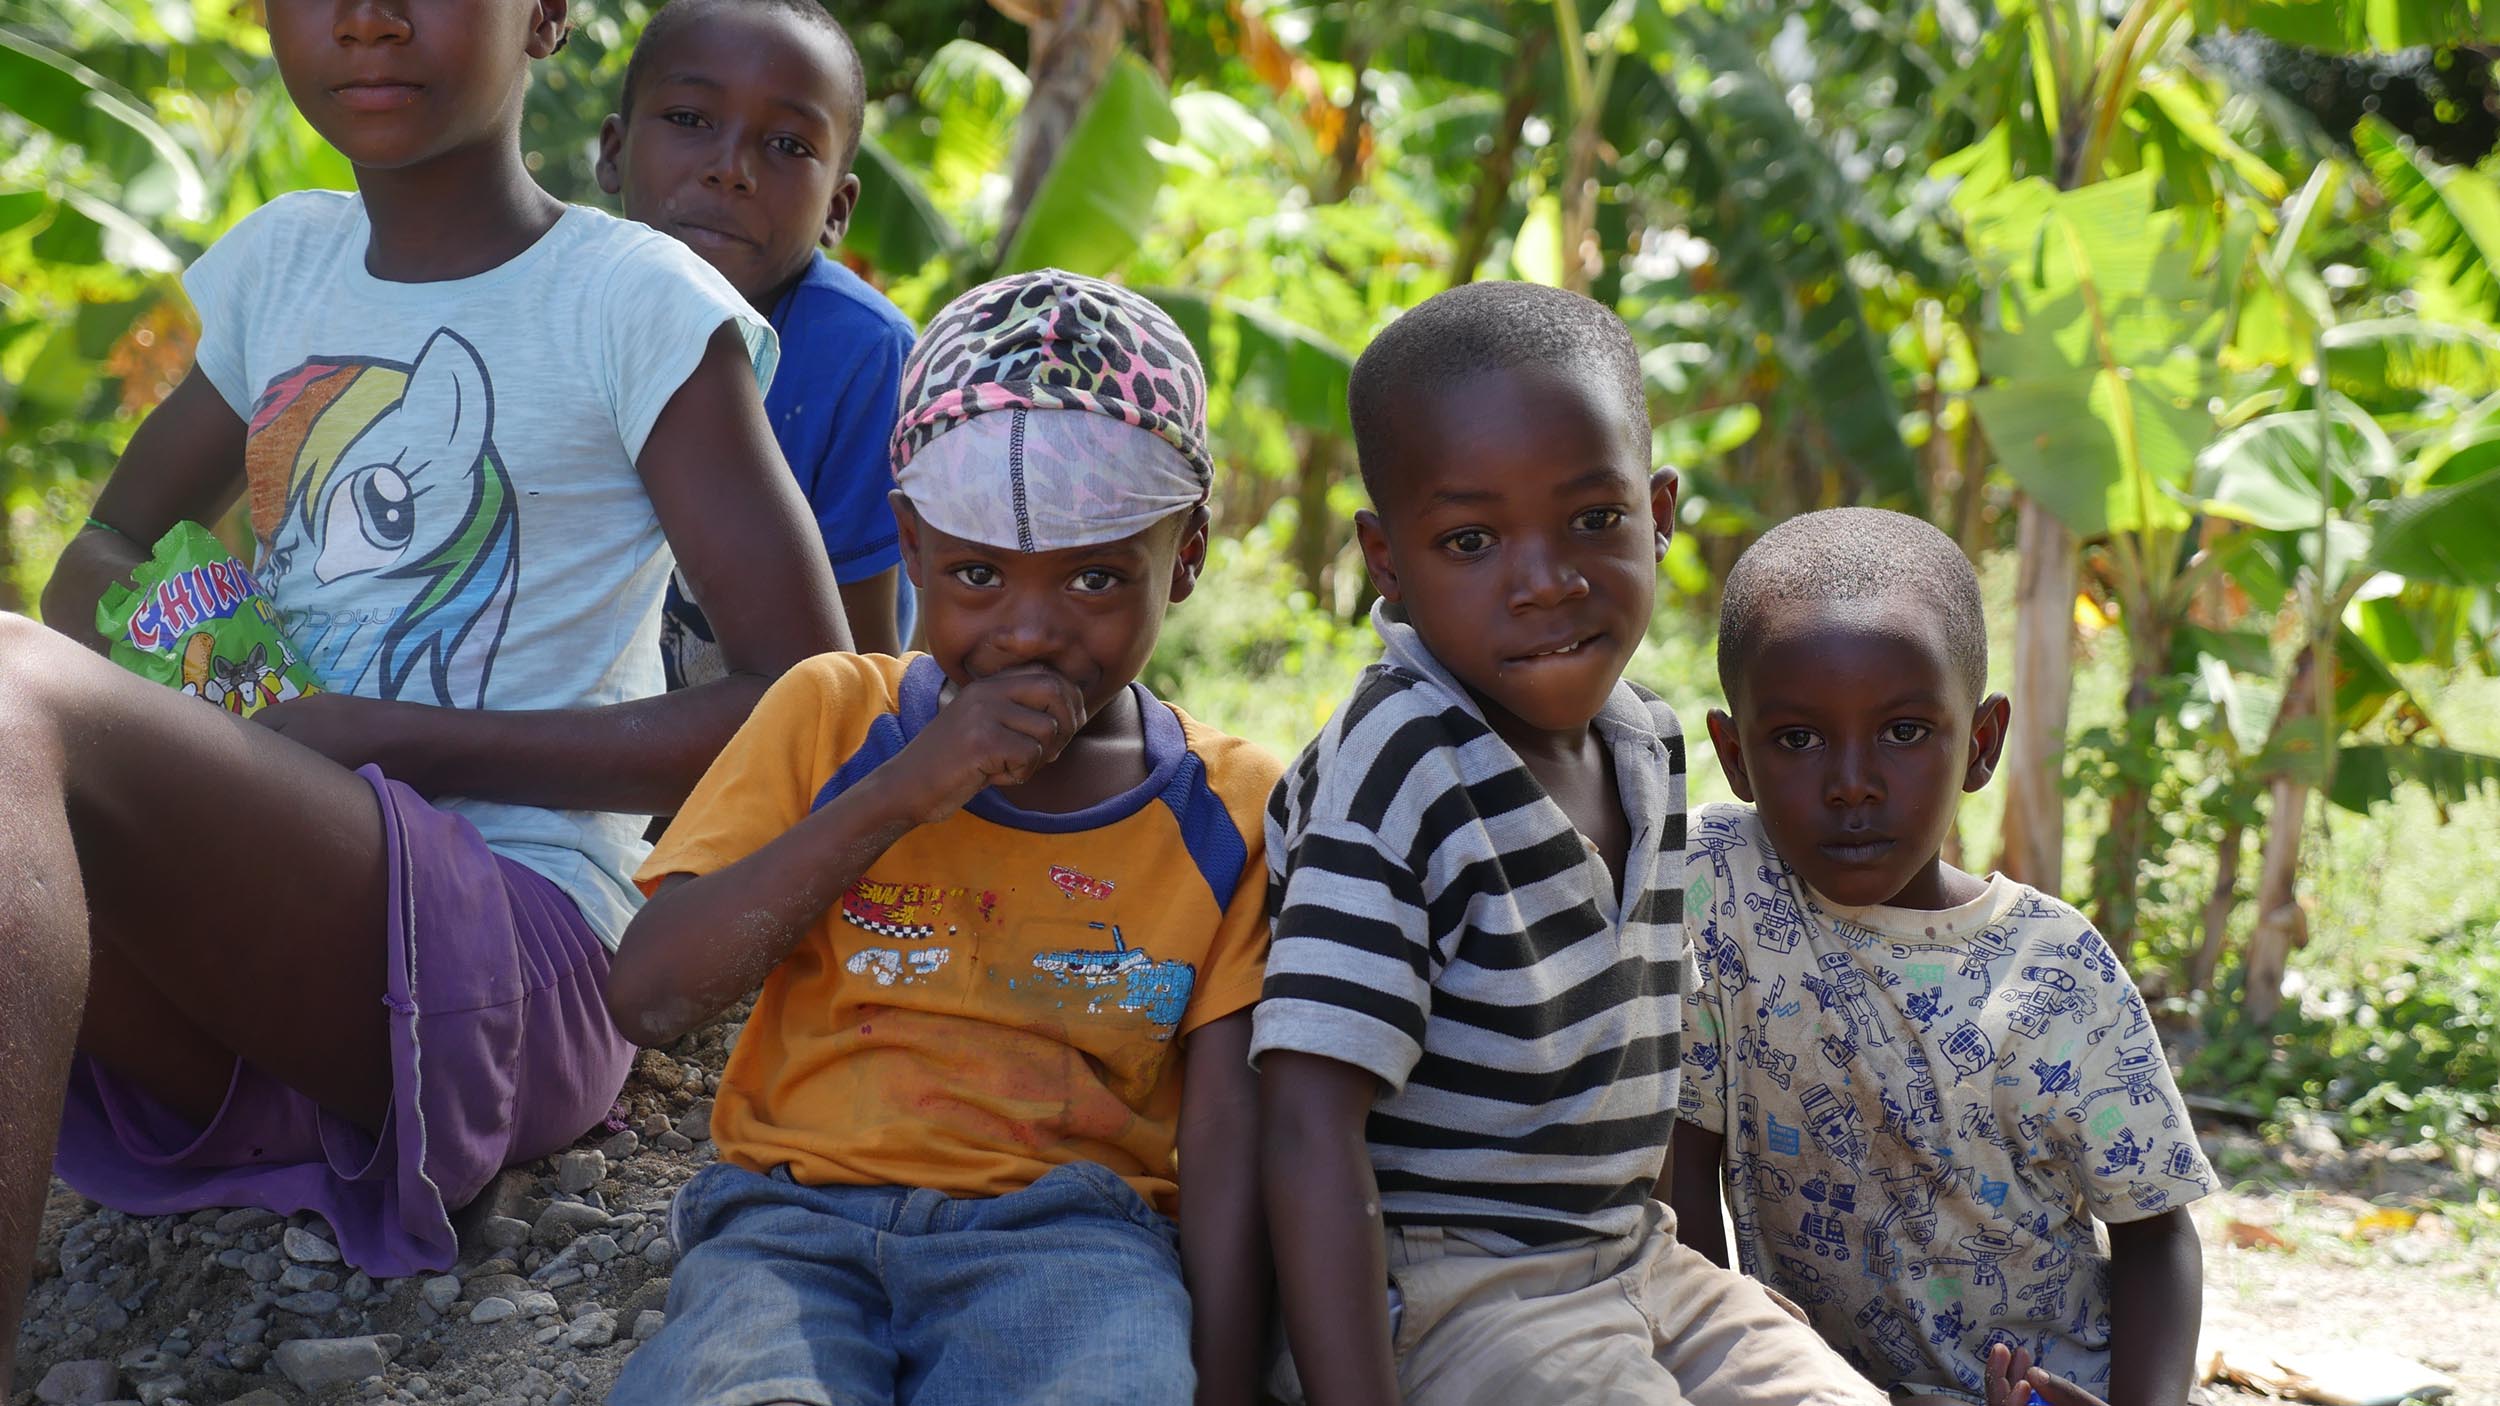 Haiti Children